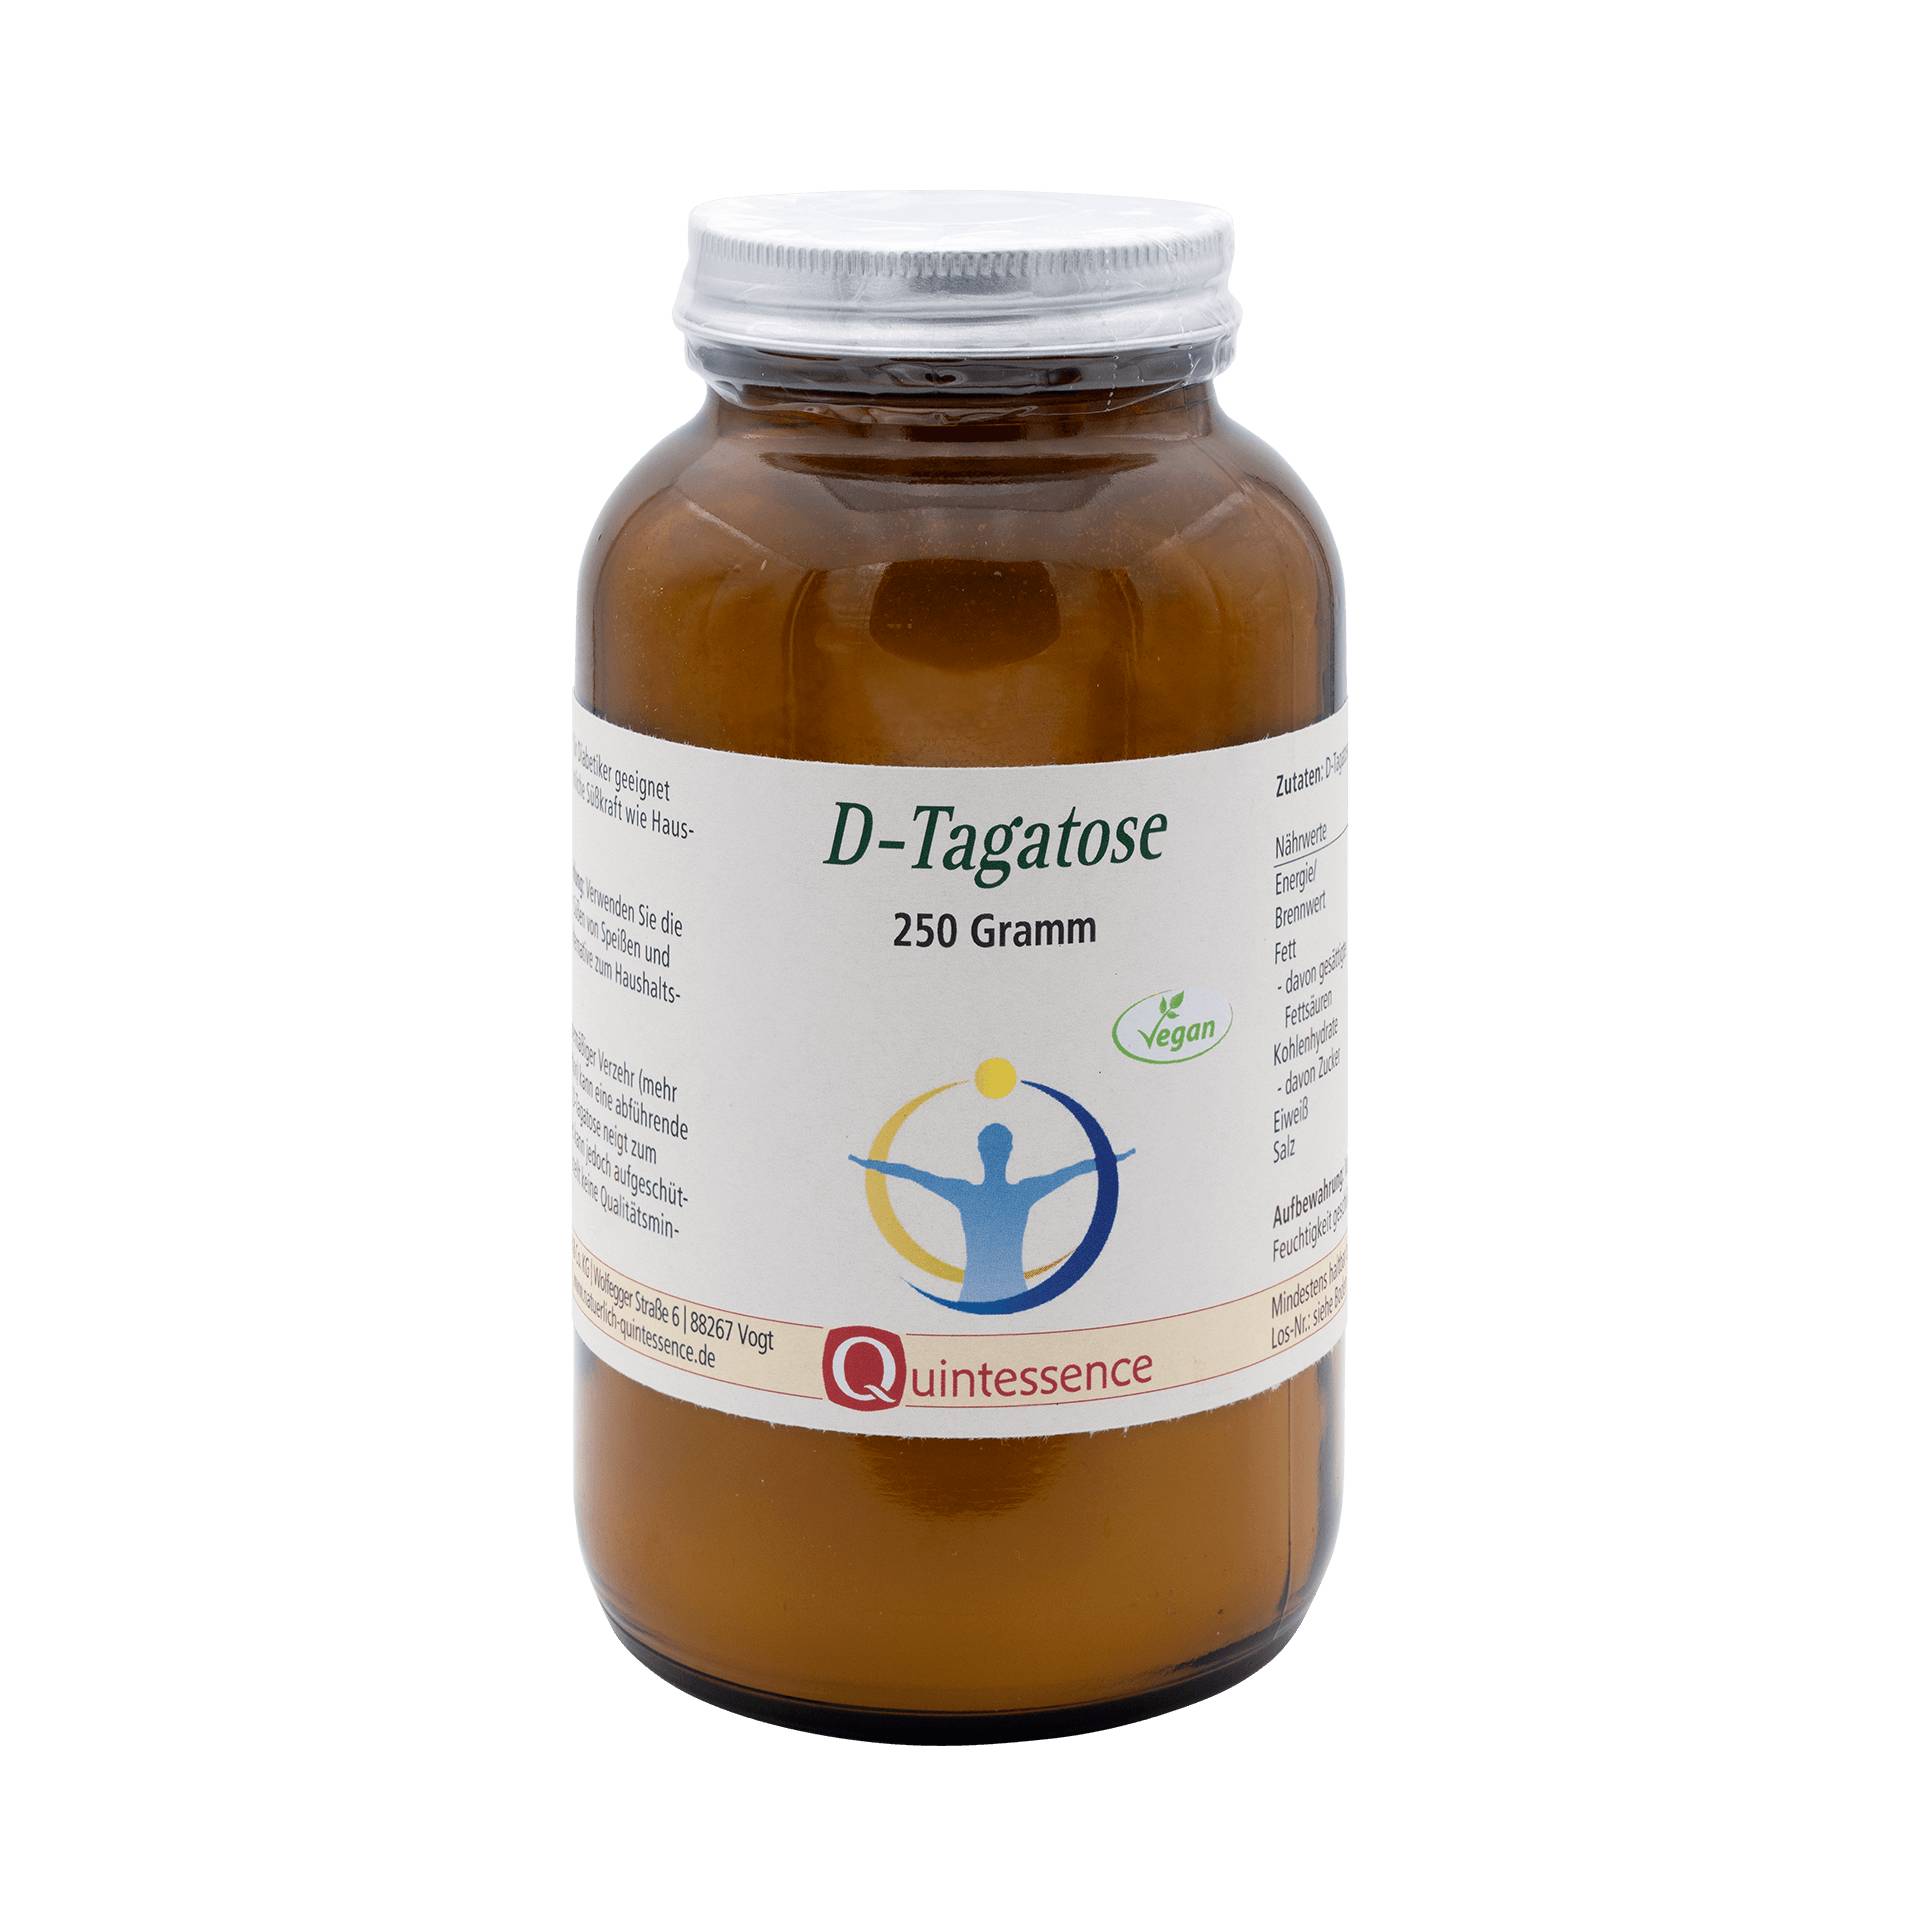 D-Tagatose 250 g - Zahnfreundliche Alternative zu Haushaltszucker - Für Diabetiker geeignet - Vegan - Quintessence von Quintessence